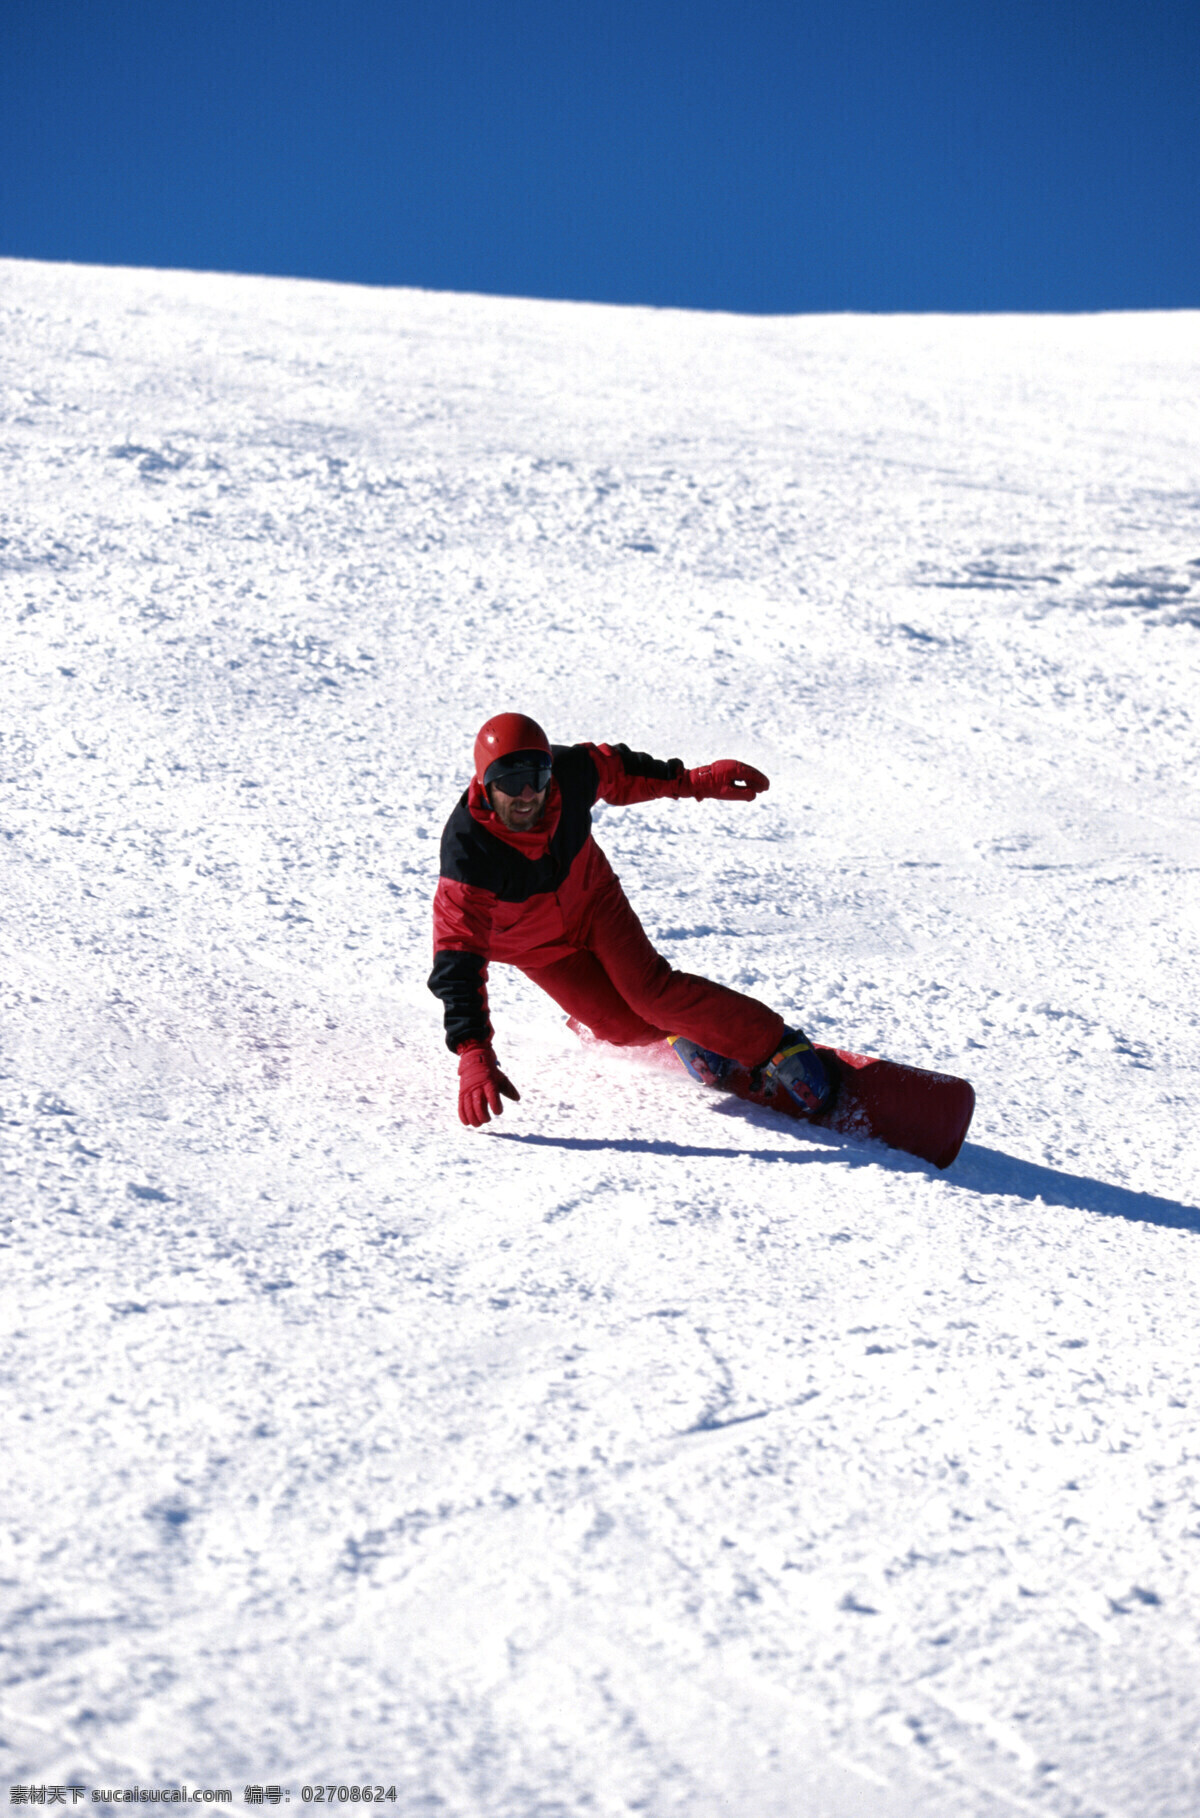 体育运动 滑雪 极限挑战 滑雪挑战 滑雪运动 文化艺术 摄影图库